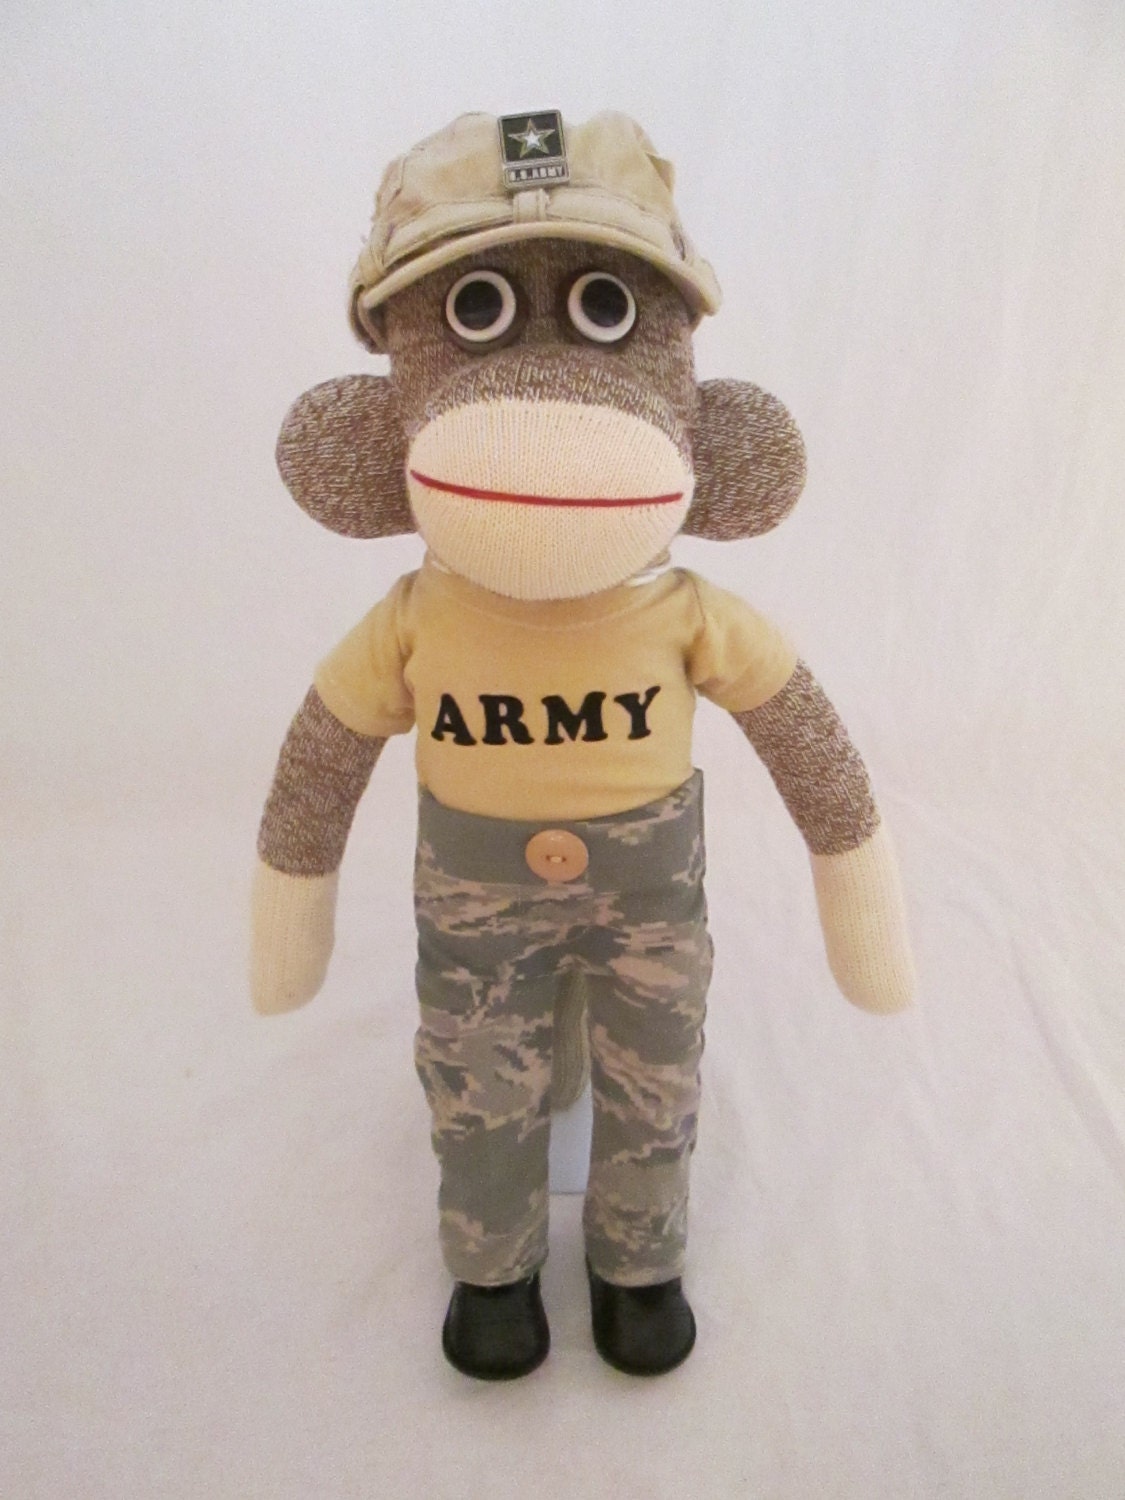 Jackson The US Army Sock Monkey by ShowMeTheMonkeys on Etsy